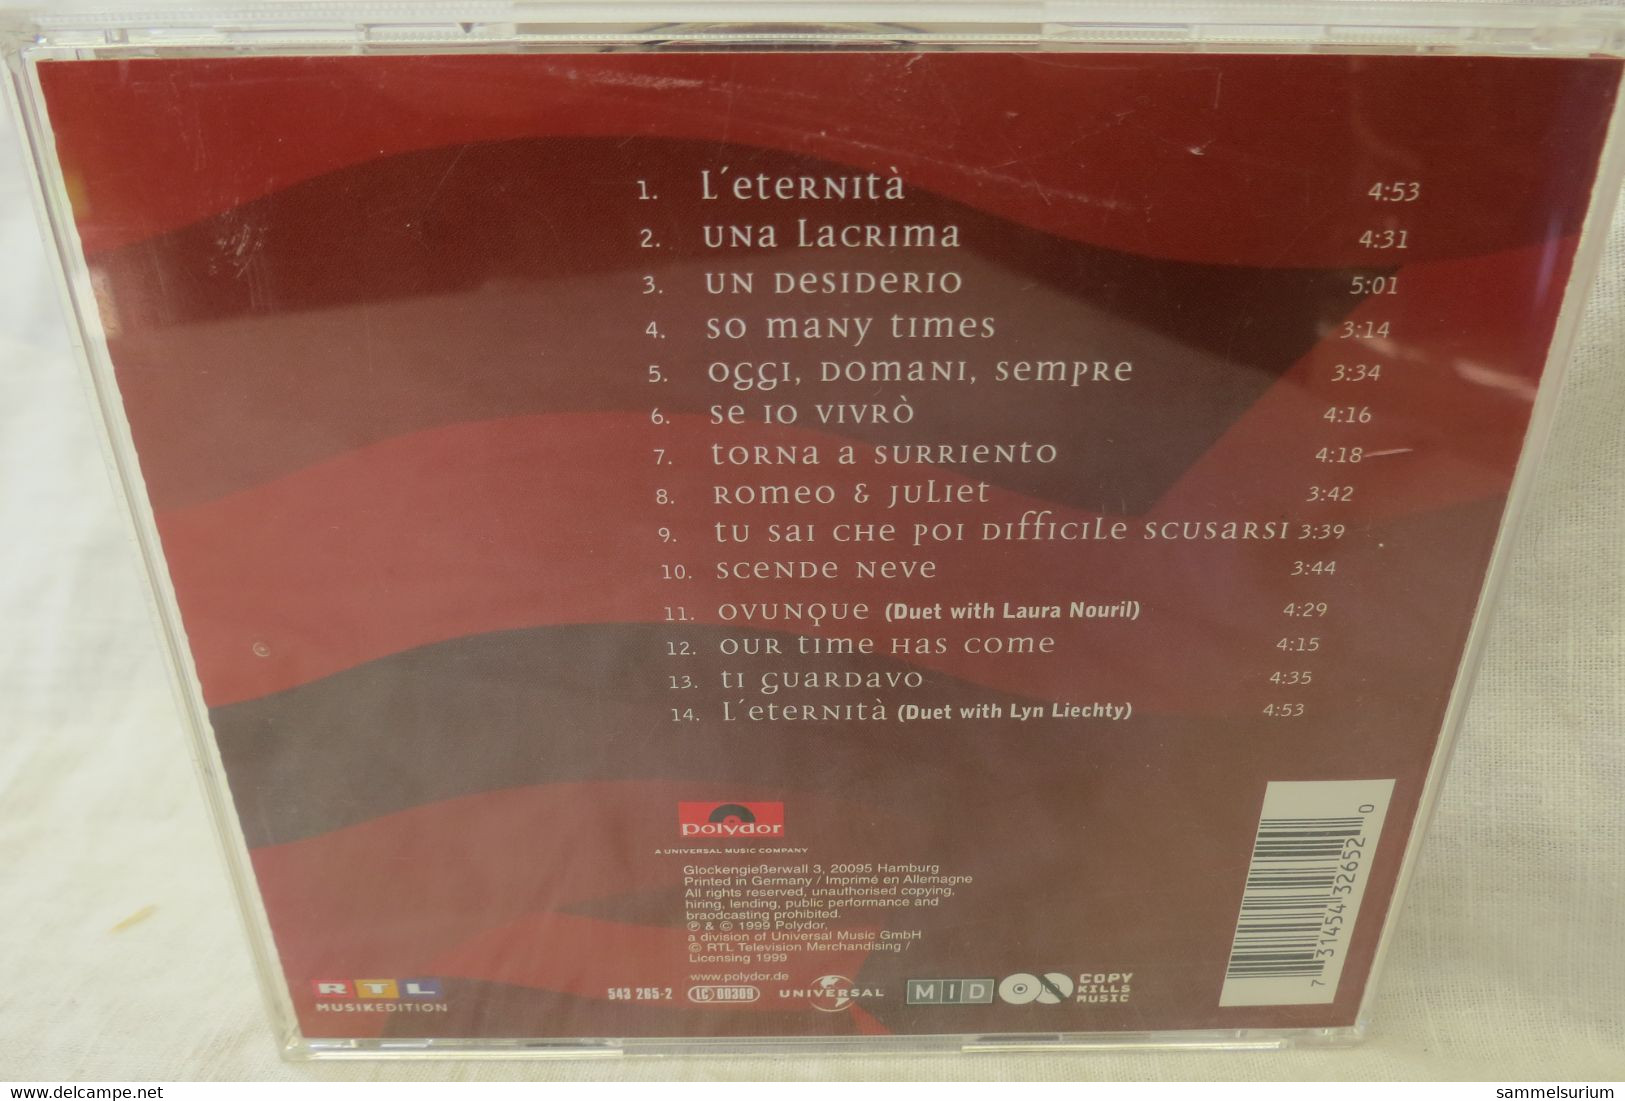 CD Piero Mazzocchetti "L'eternità" - Other - Italian Music